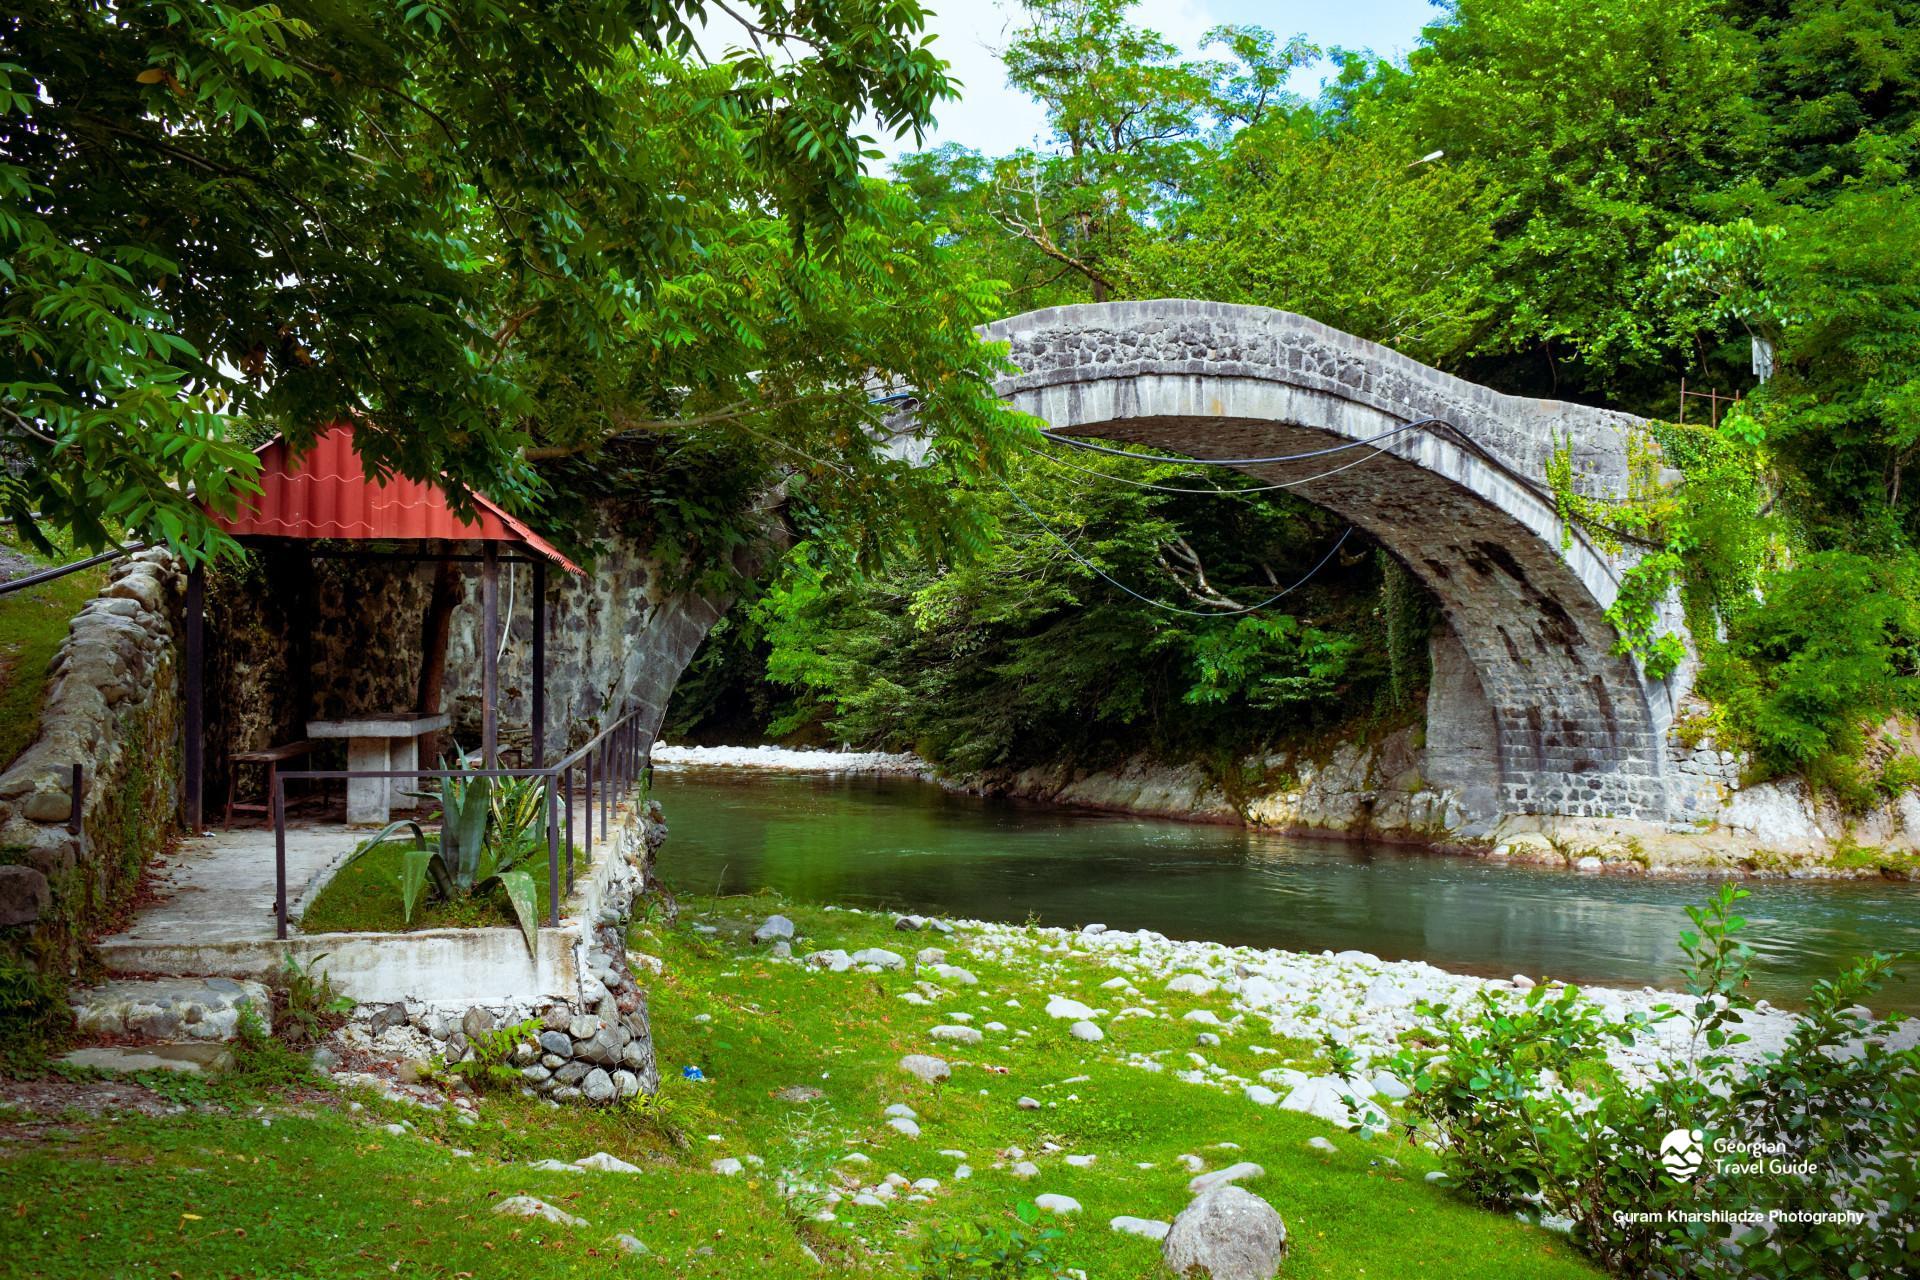 Kobuleti village arched bridge